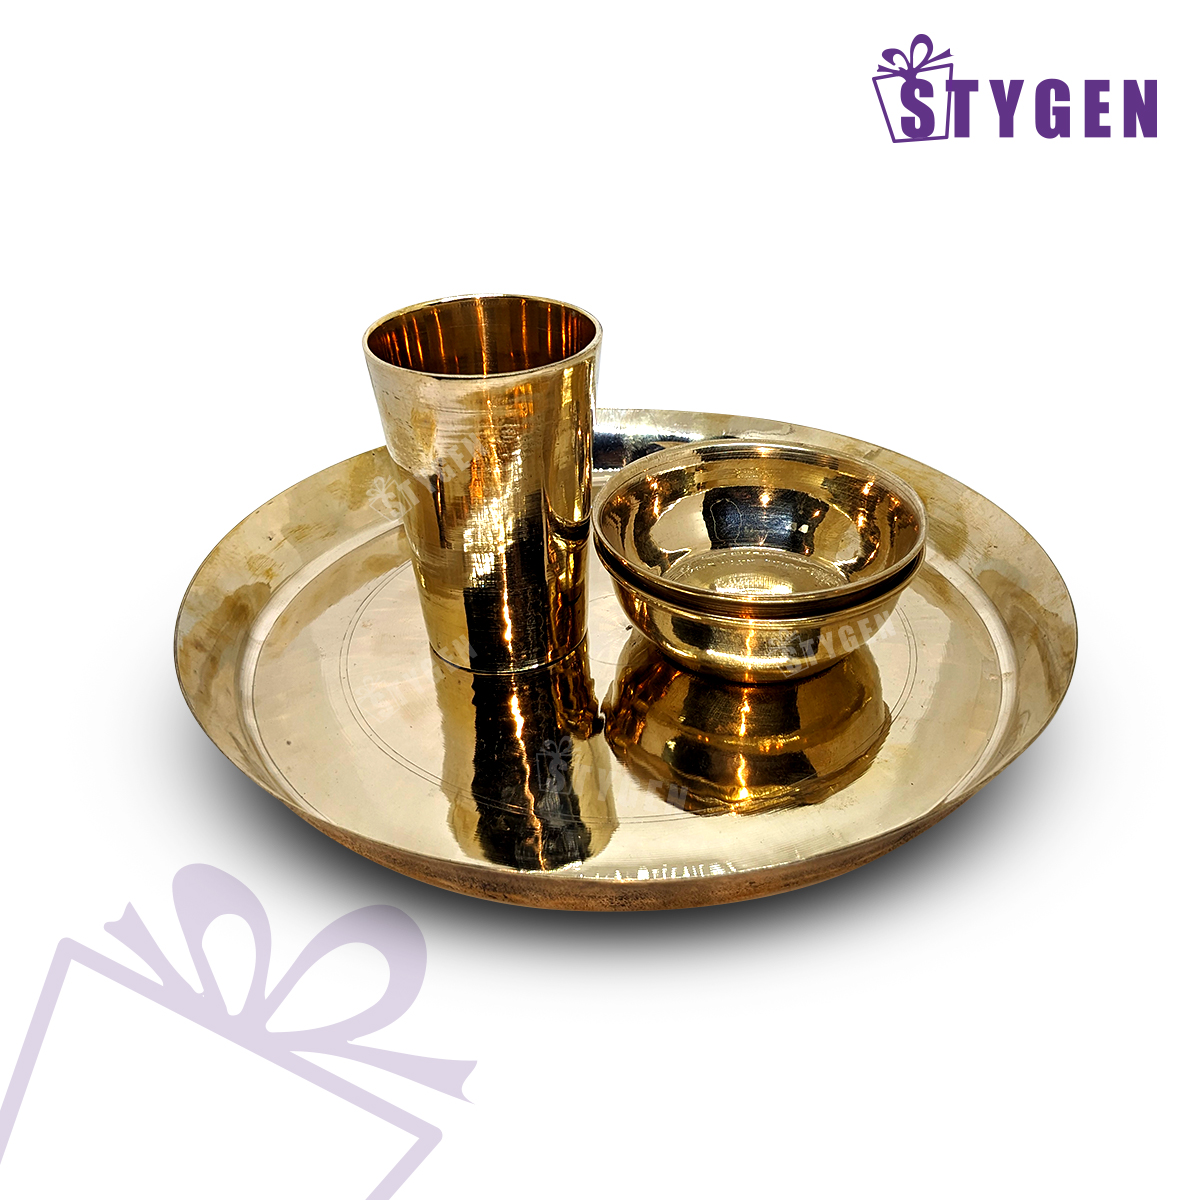 ইন্ডিয়ান কাসার প্লেট, গ্লাস & বাটির সেট - Indian Kasa Plate, Glass & Bati Set - Indian Bronze Made Plate, Glass & Bowl Set